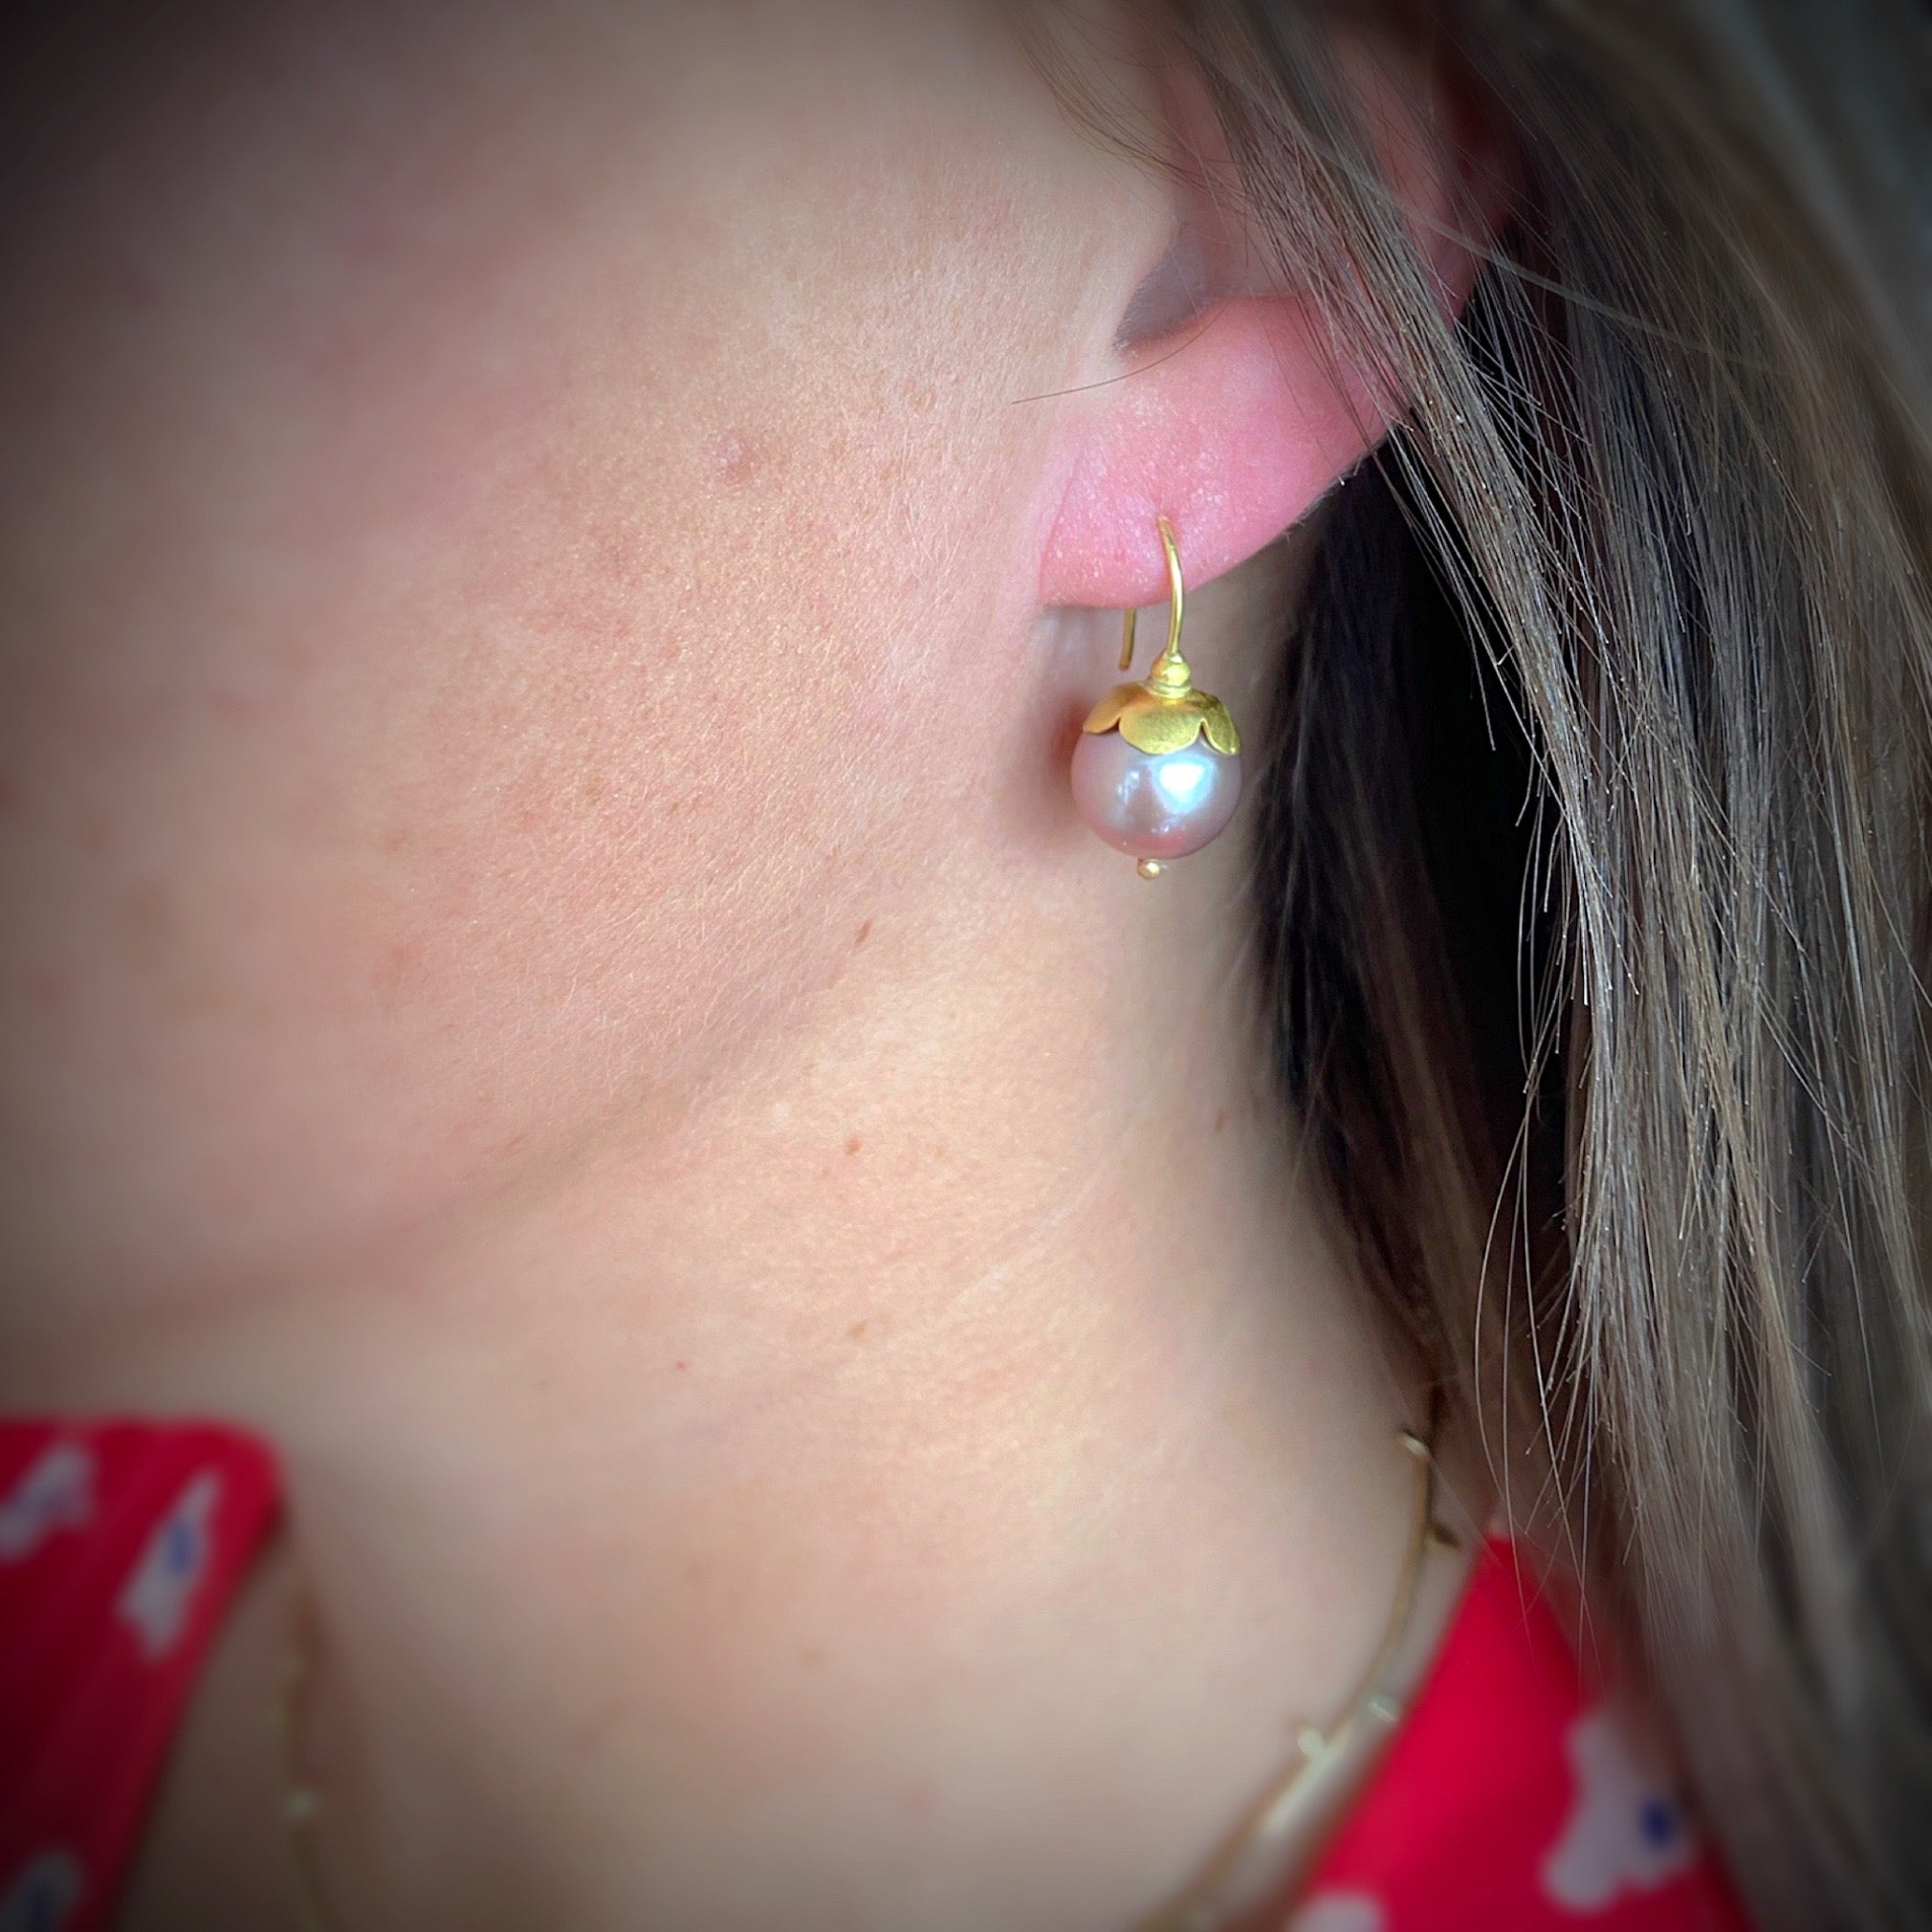 Pearl daisy earrings